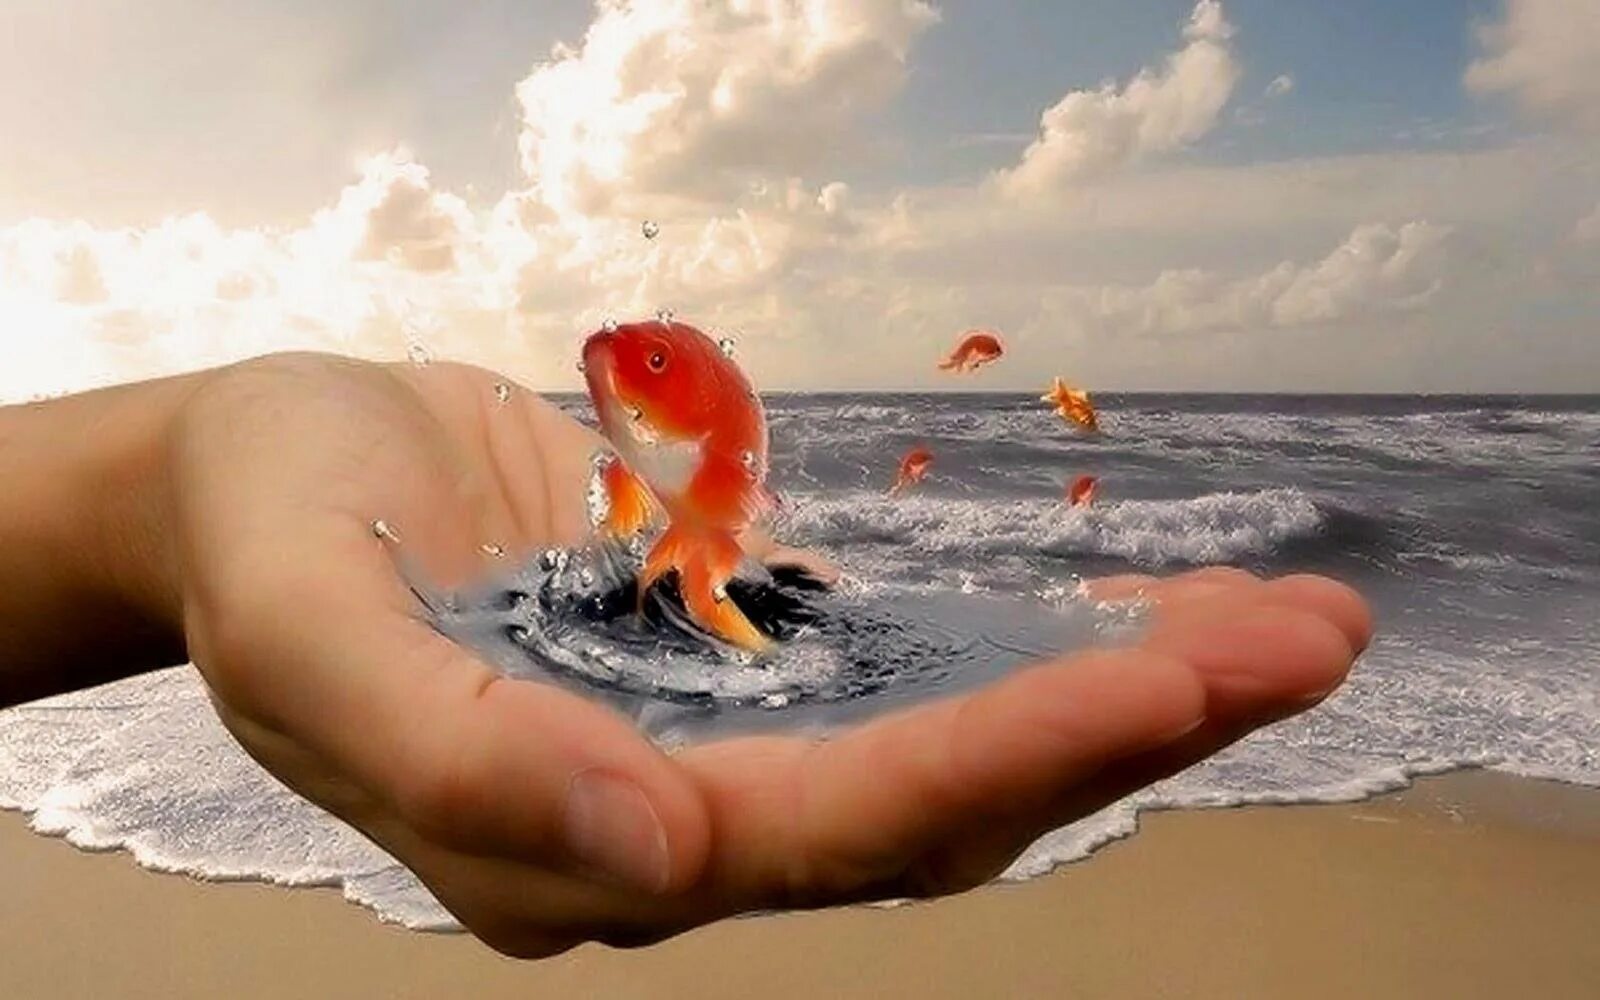 Золотая рыбка в руках. Золотая рыбка исполнение желаний. Добро у моря. Золотая рыбка исполняет желания. На лету ловите счастья ненадежные часы